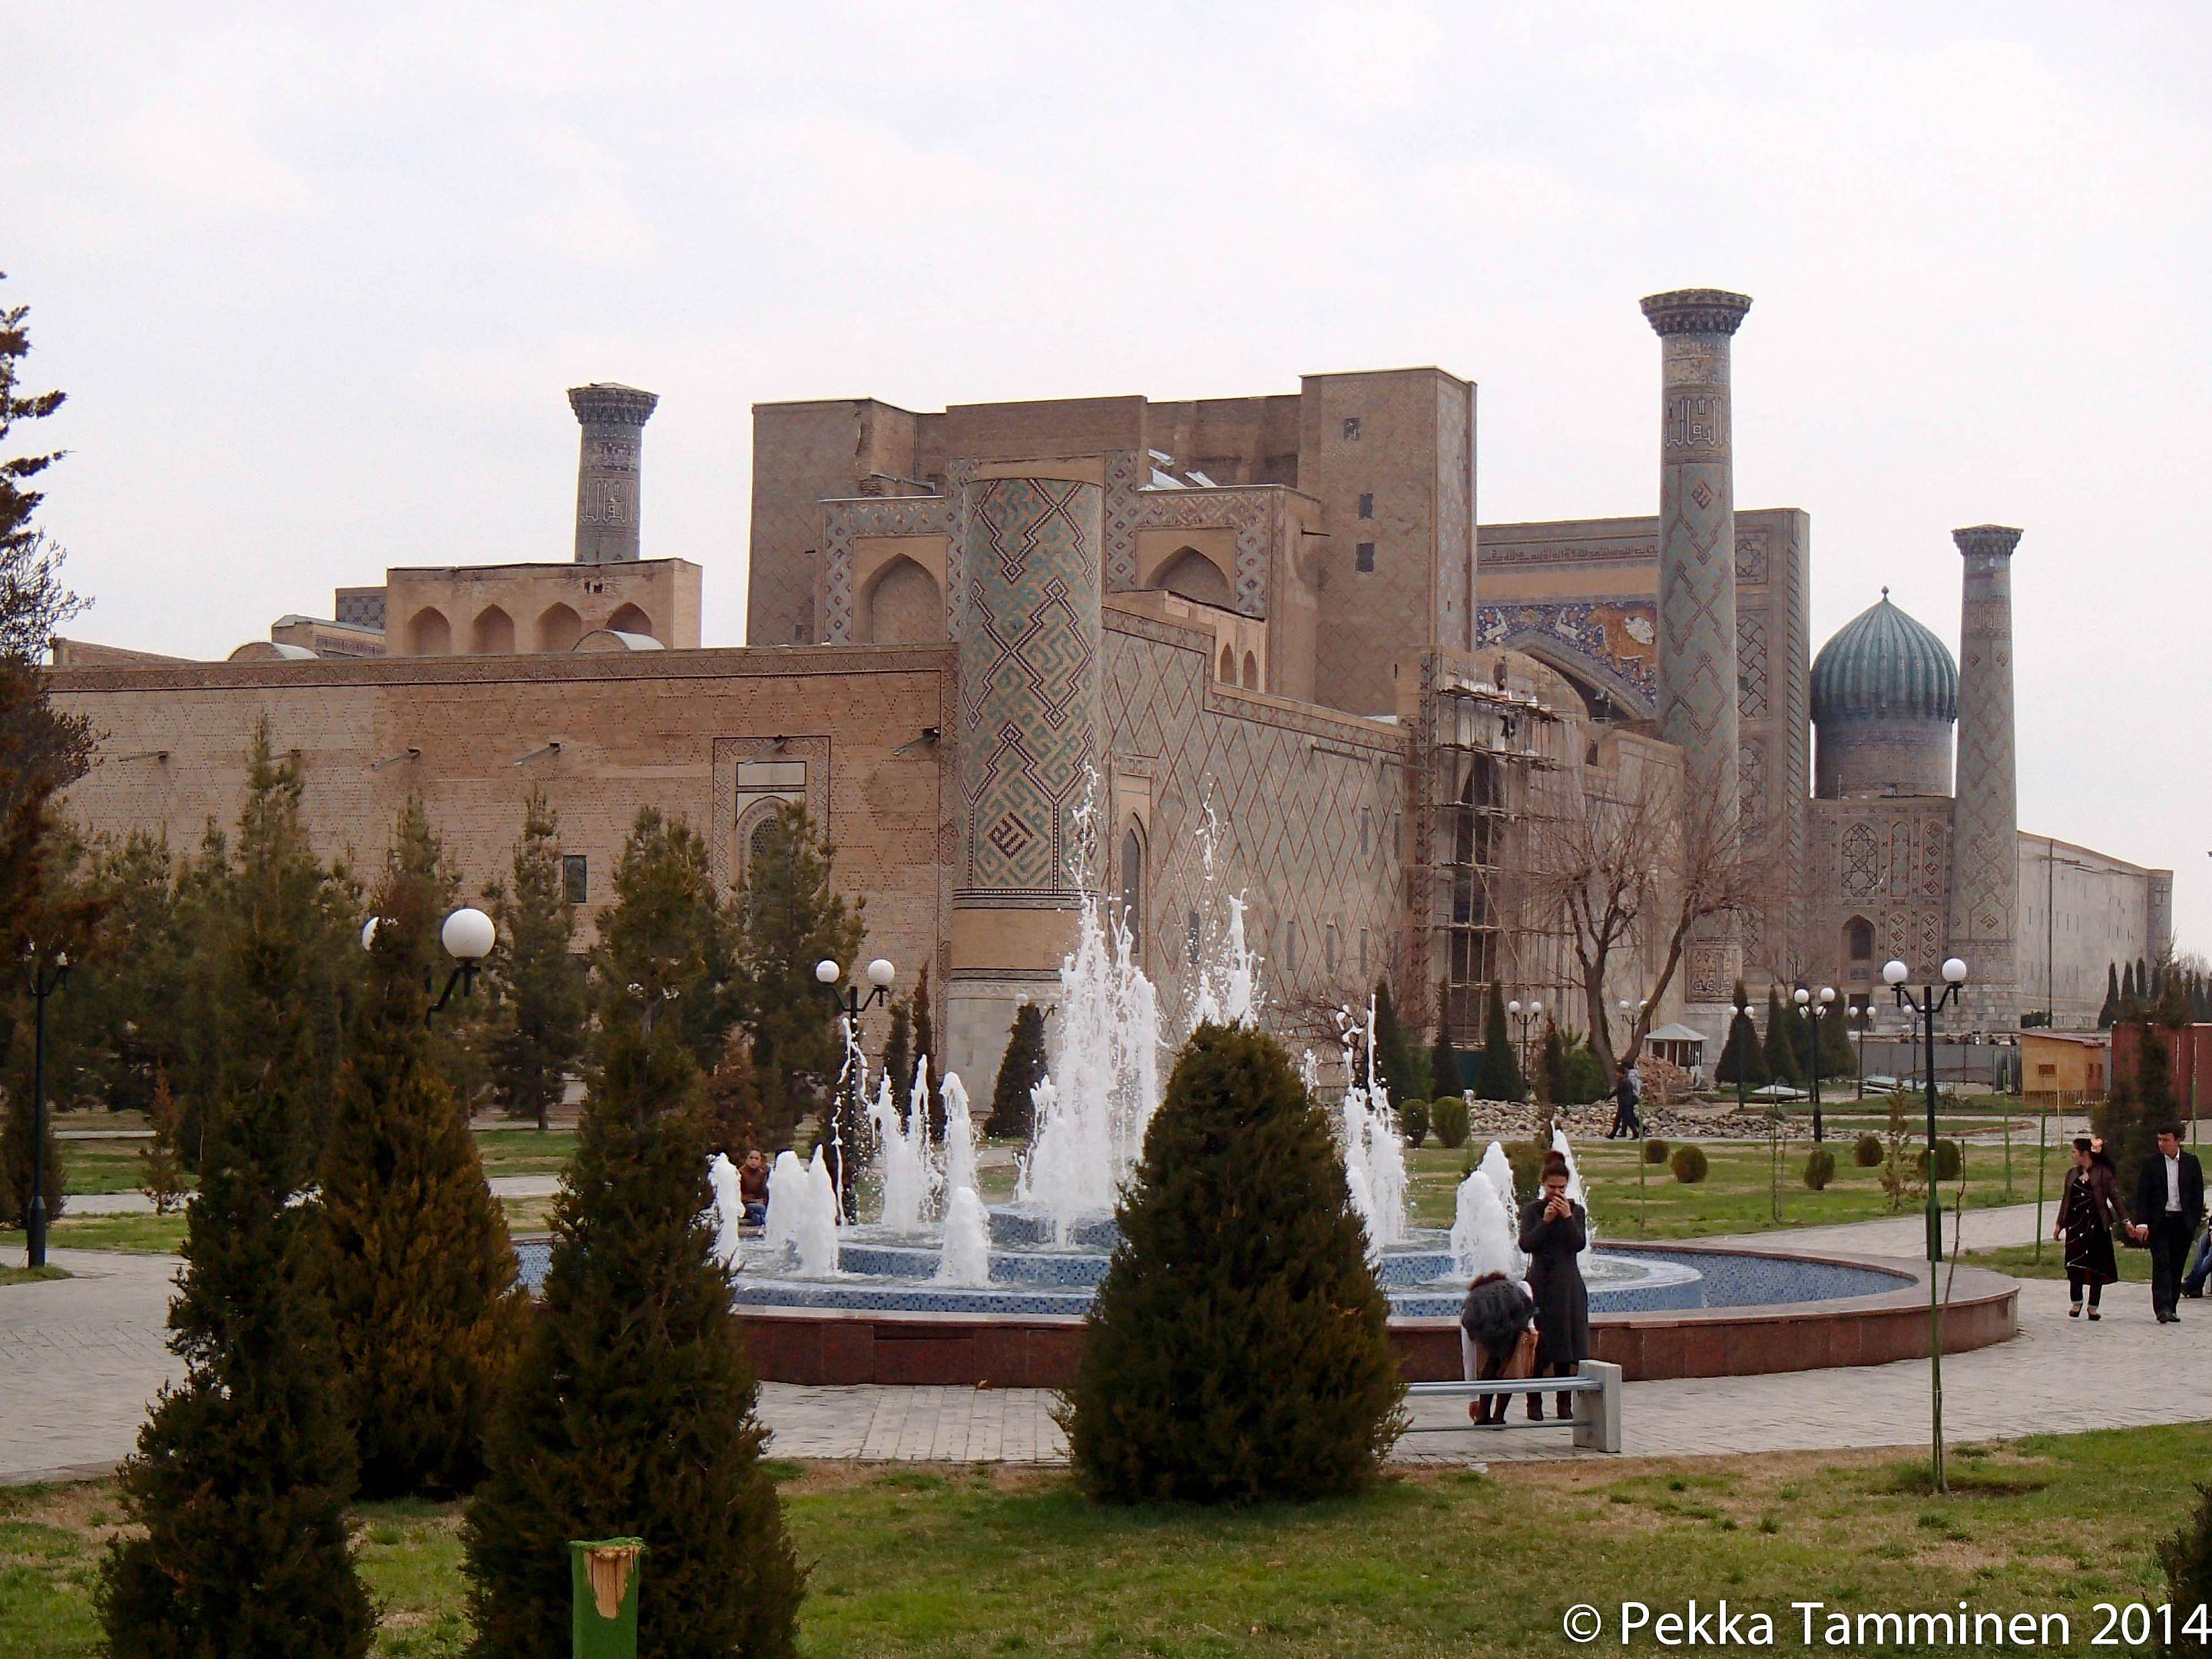 Arrivo a Tashkent e visita della città vecchia